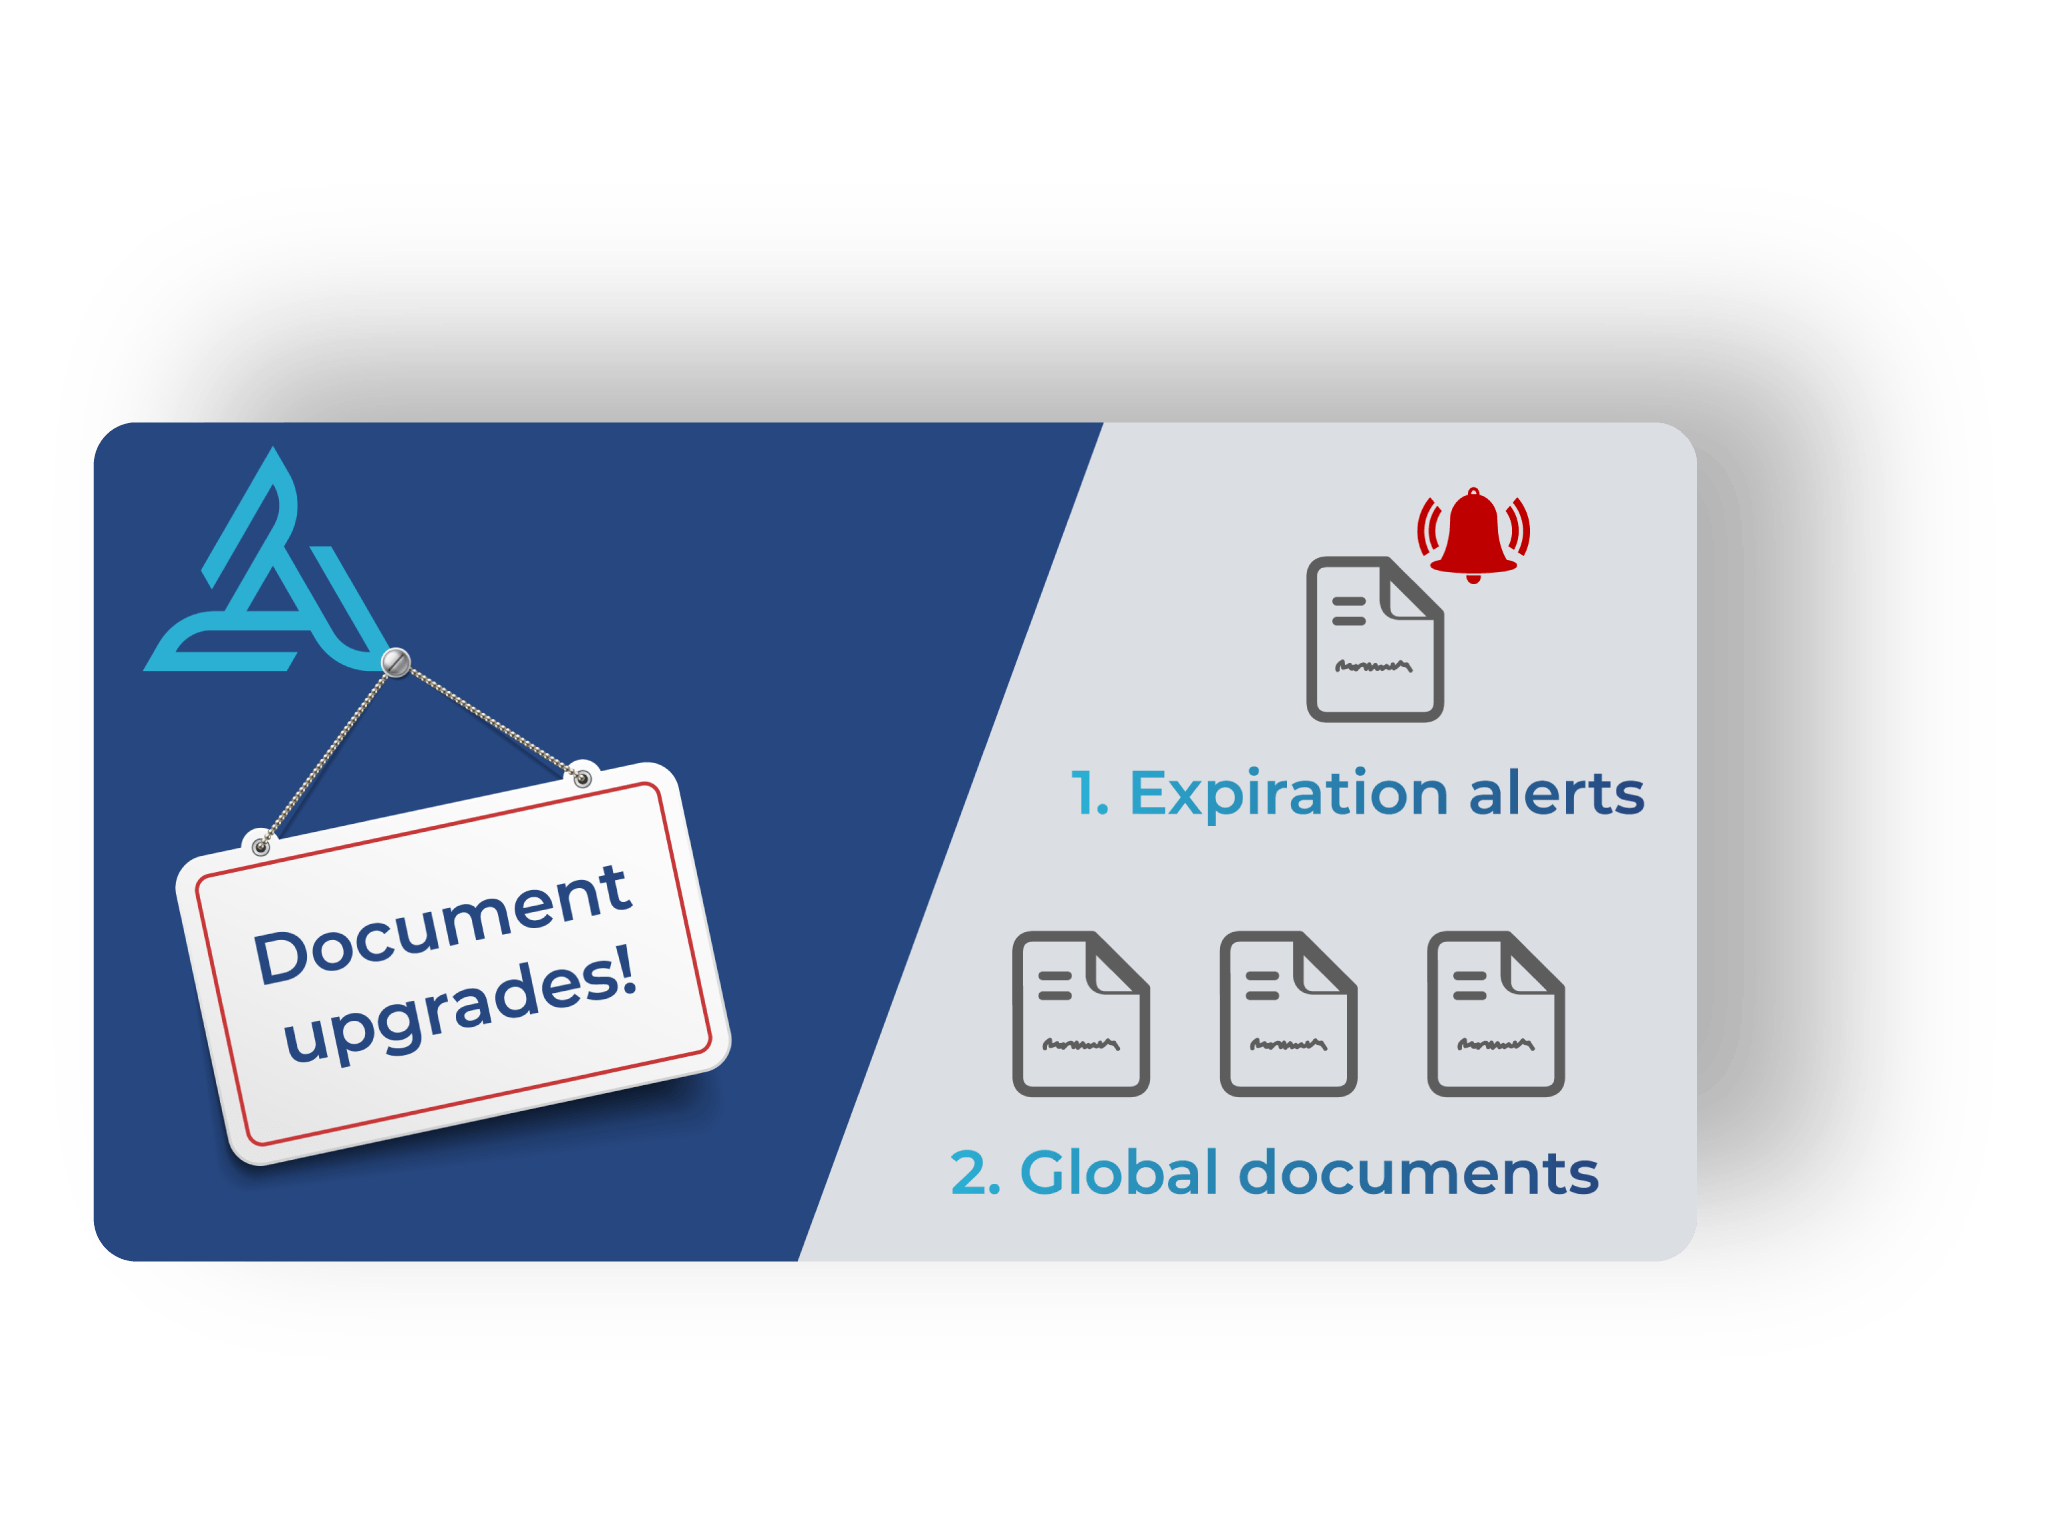 Document upgrades